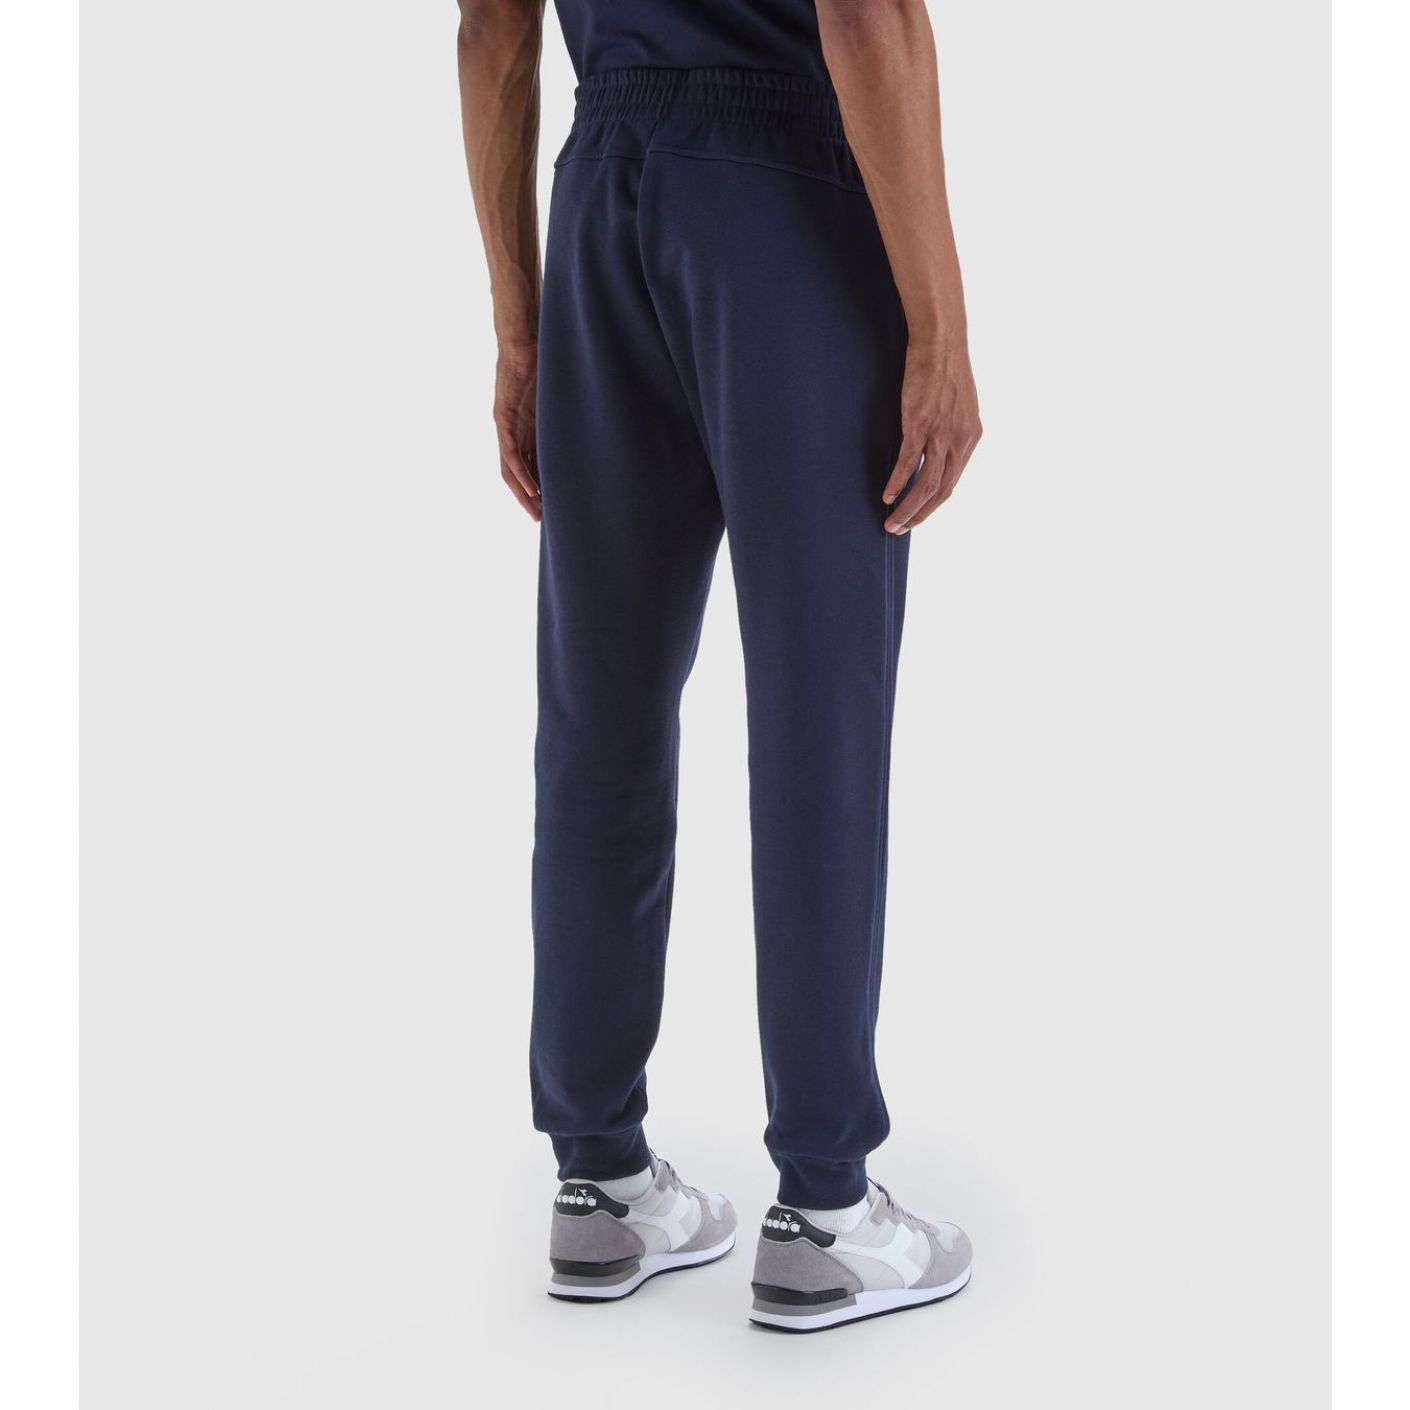 Diadora Pantalone Cuff Core Blu da Uomo